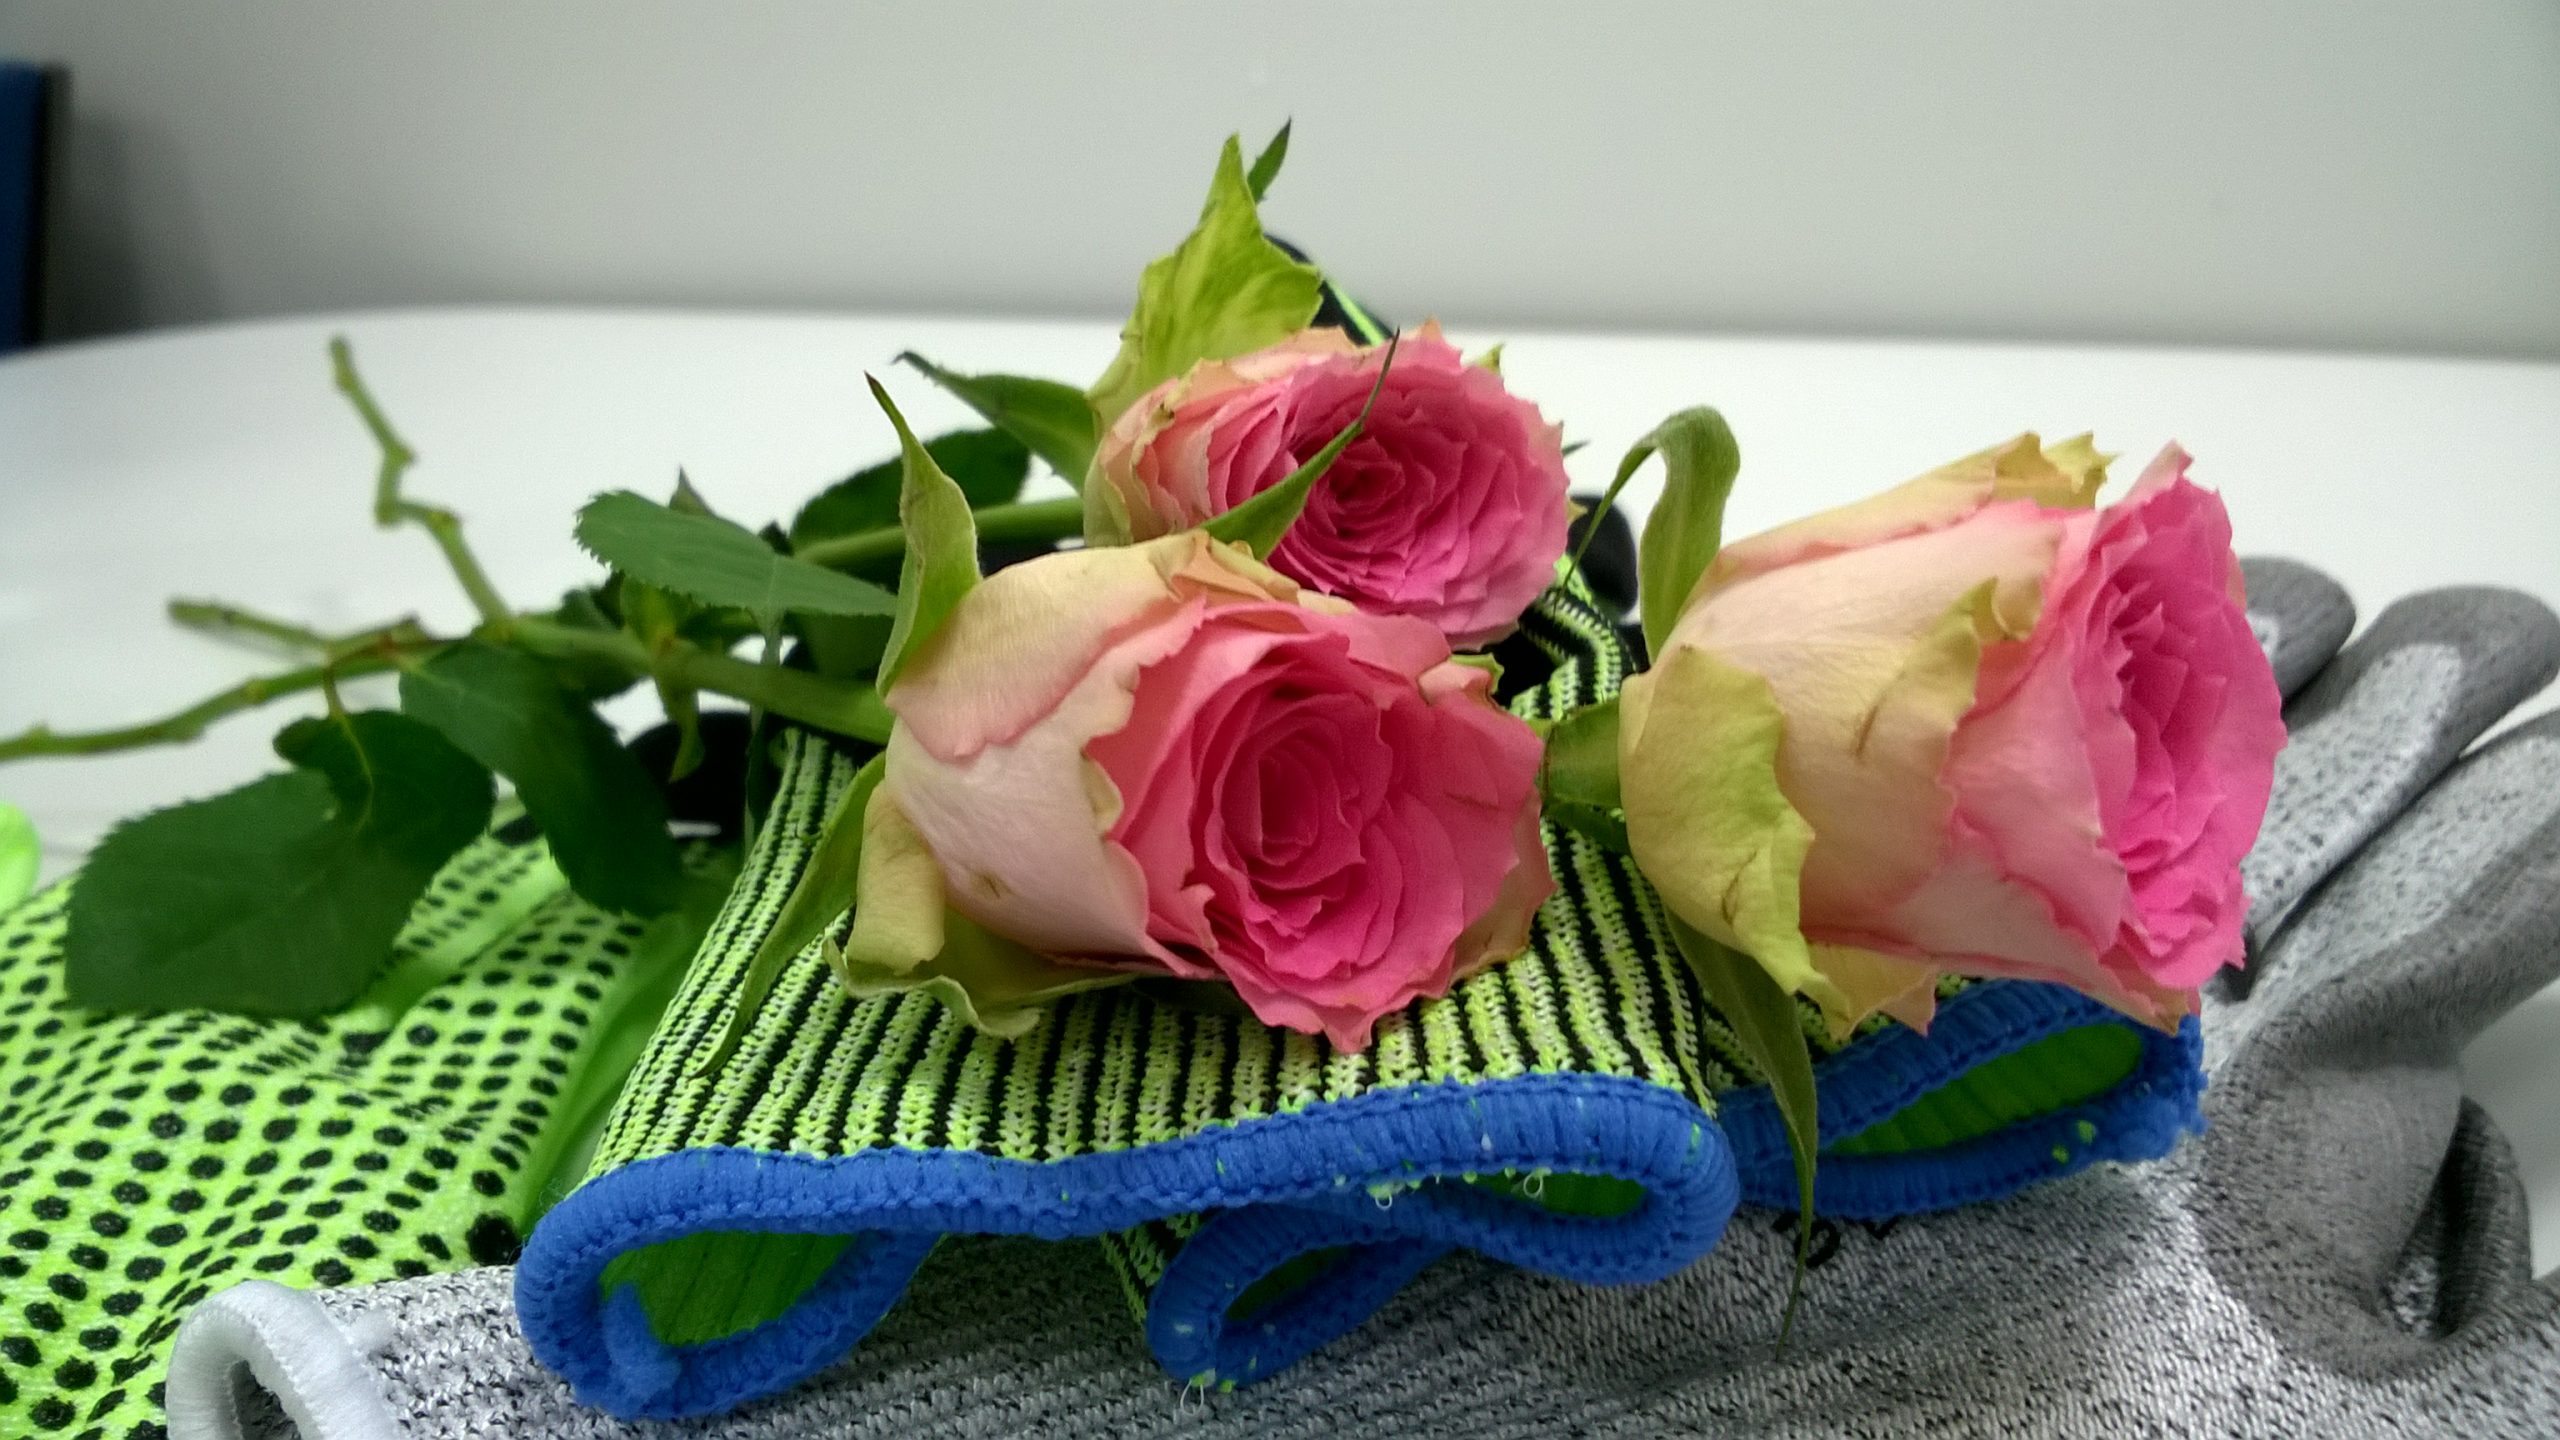 Valkeakosken ammattiopisto, VAAO. Kuvassa vihreiden ja harmaiden työhanskojen päällä lepää kolme vaaleanpunaista ruusua.